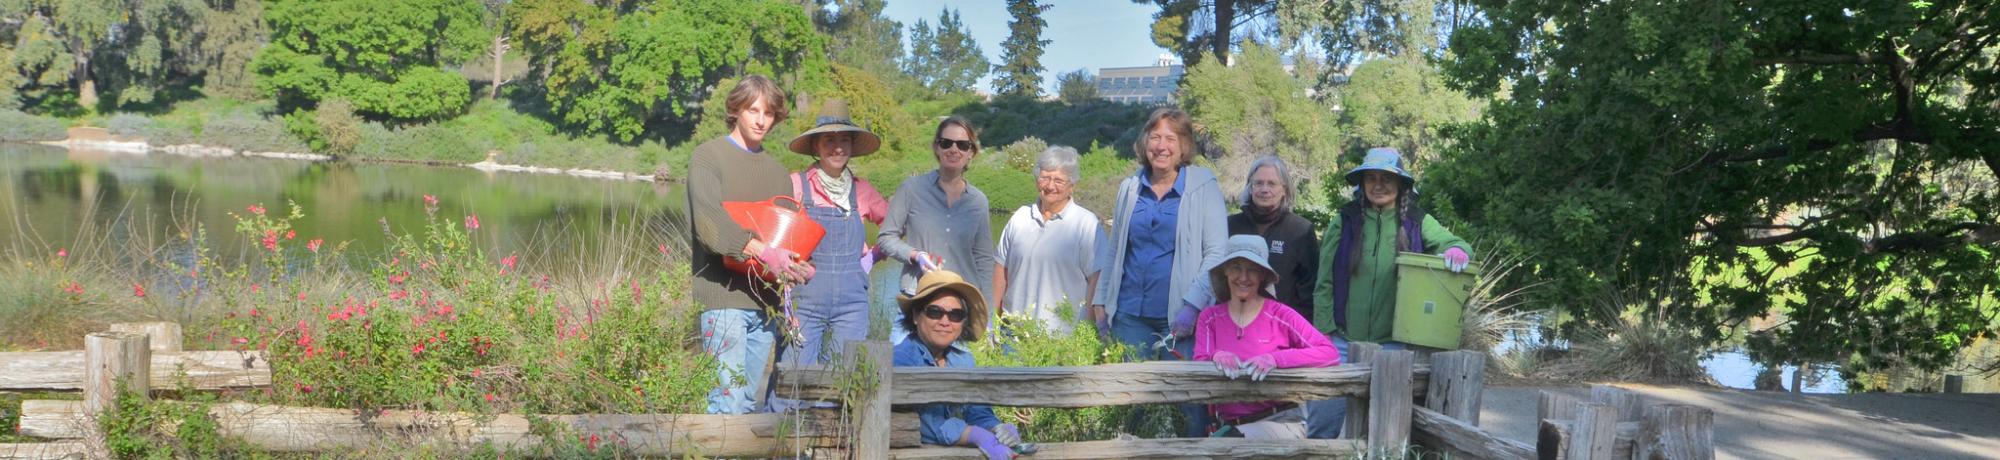 Image of UC Davis Arboretum and Public Garden volunteers gardening in the Arboretum.